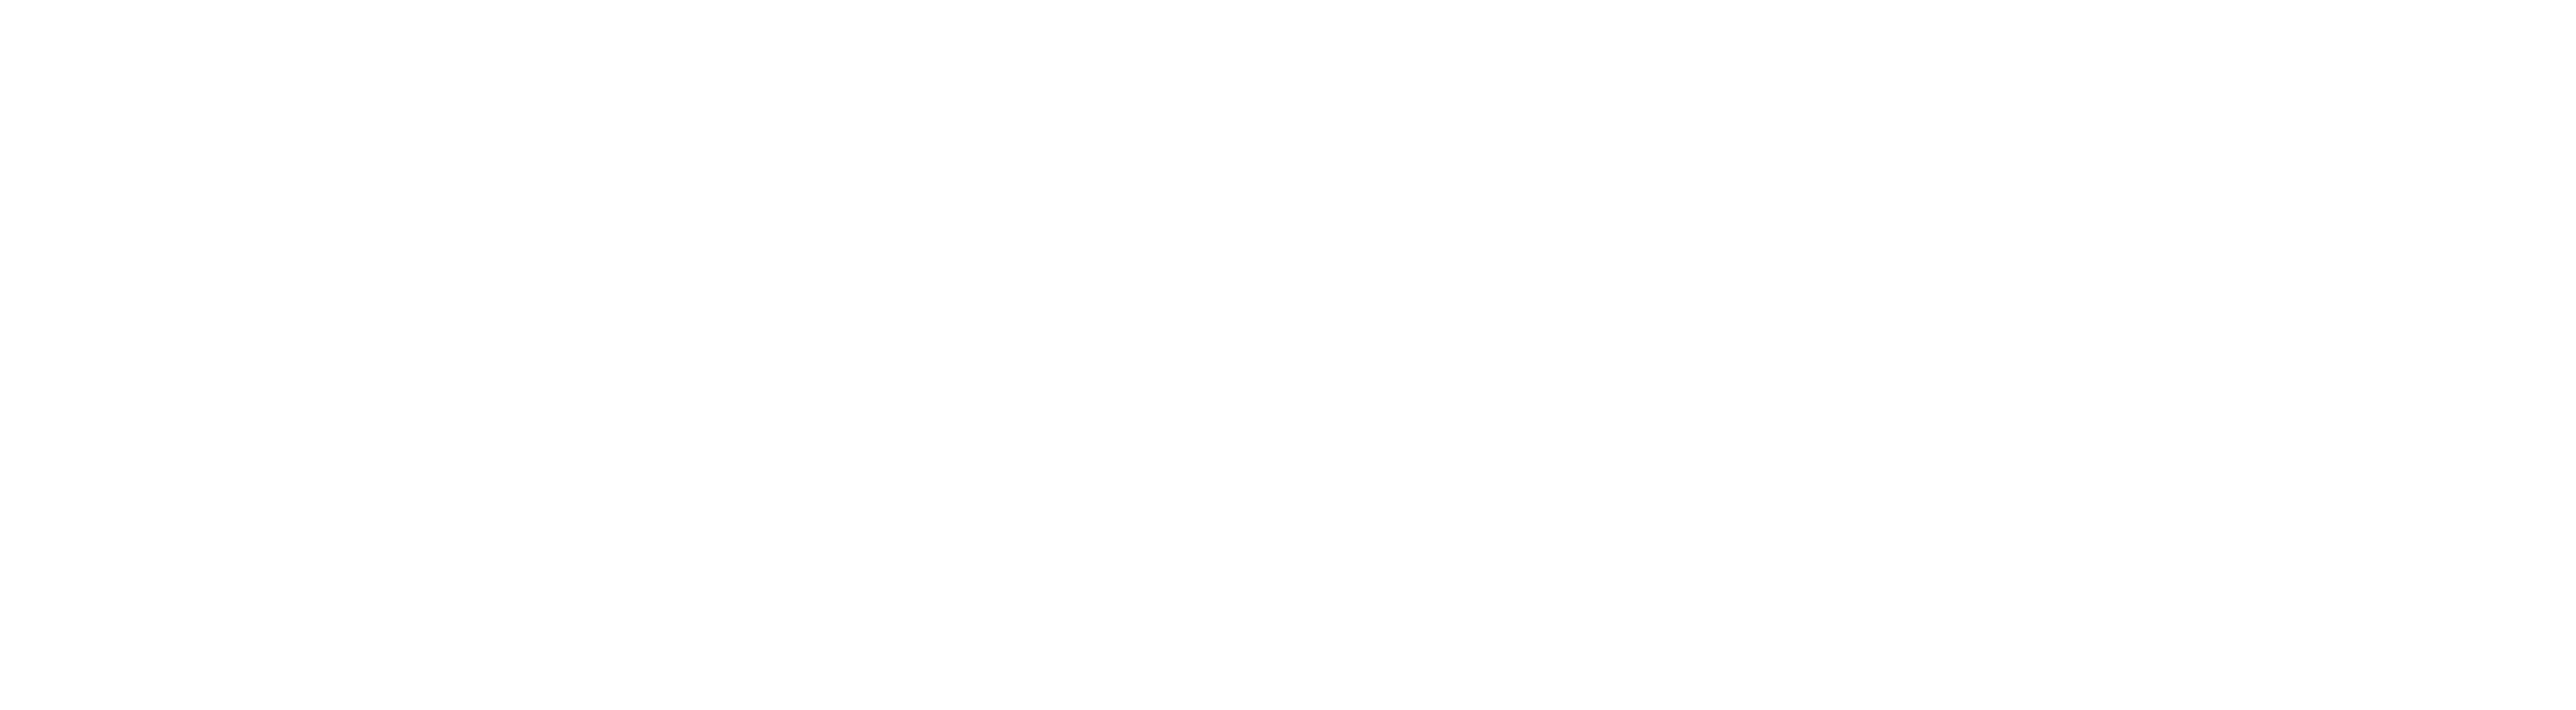 Network1 tagline white